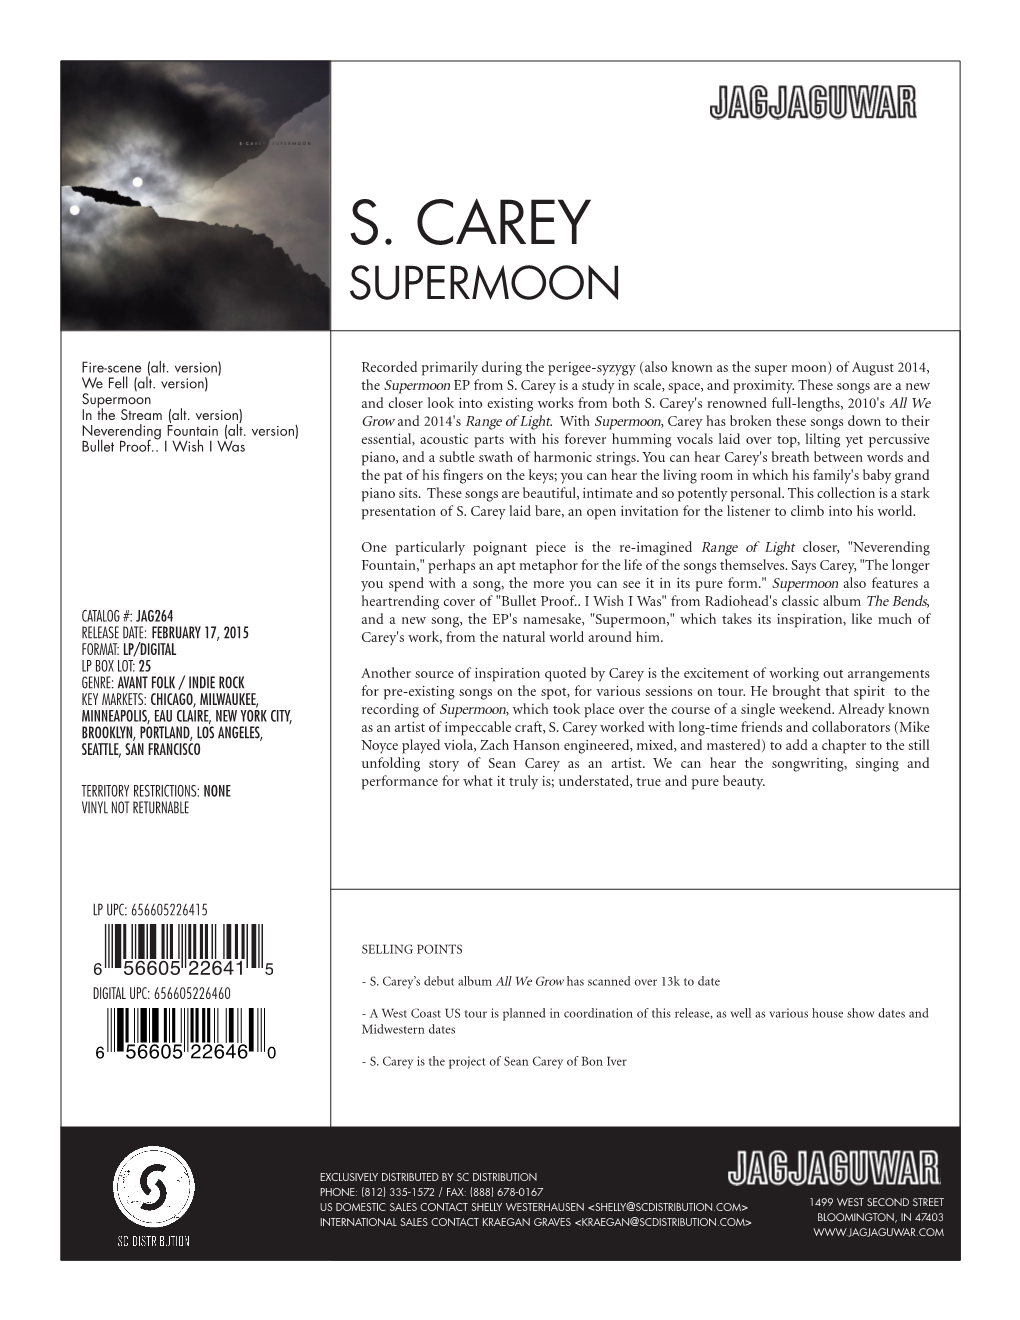 S. Carey Supermoon